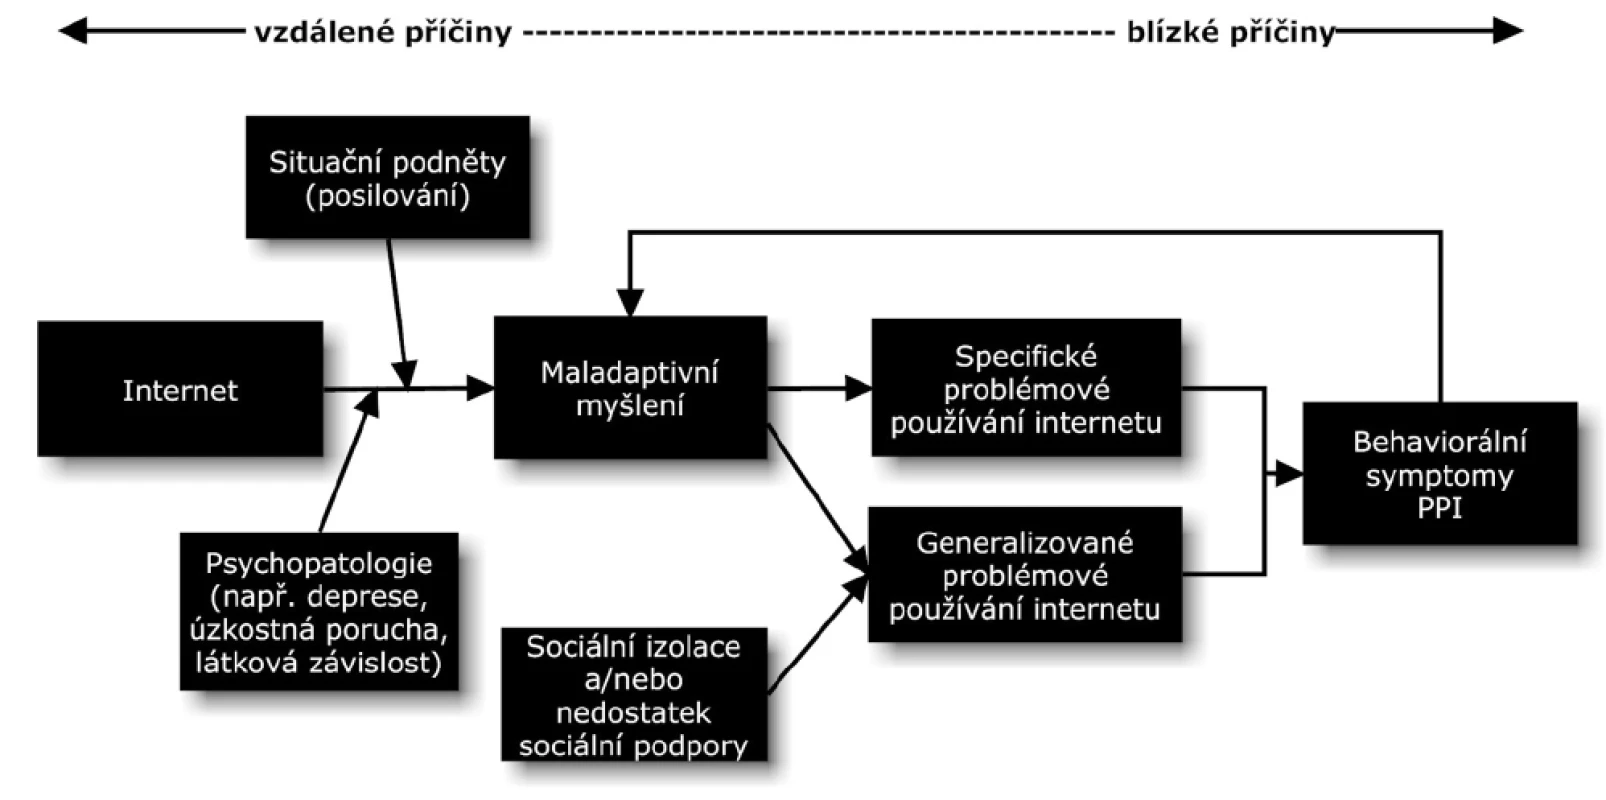 Kognitivně-behaviorální model problémového používání internetu (Davis, 2001).